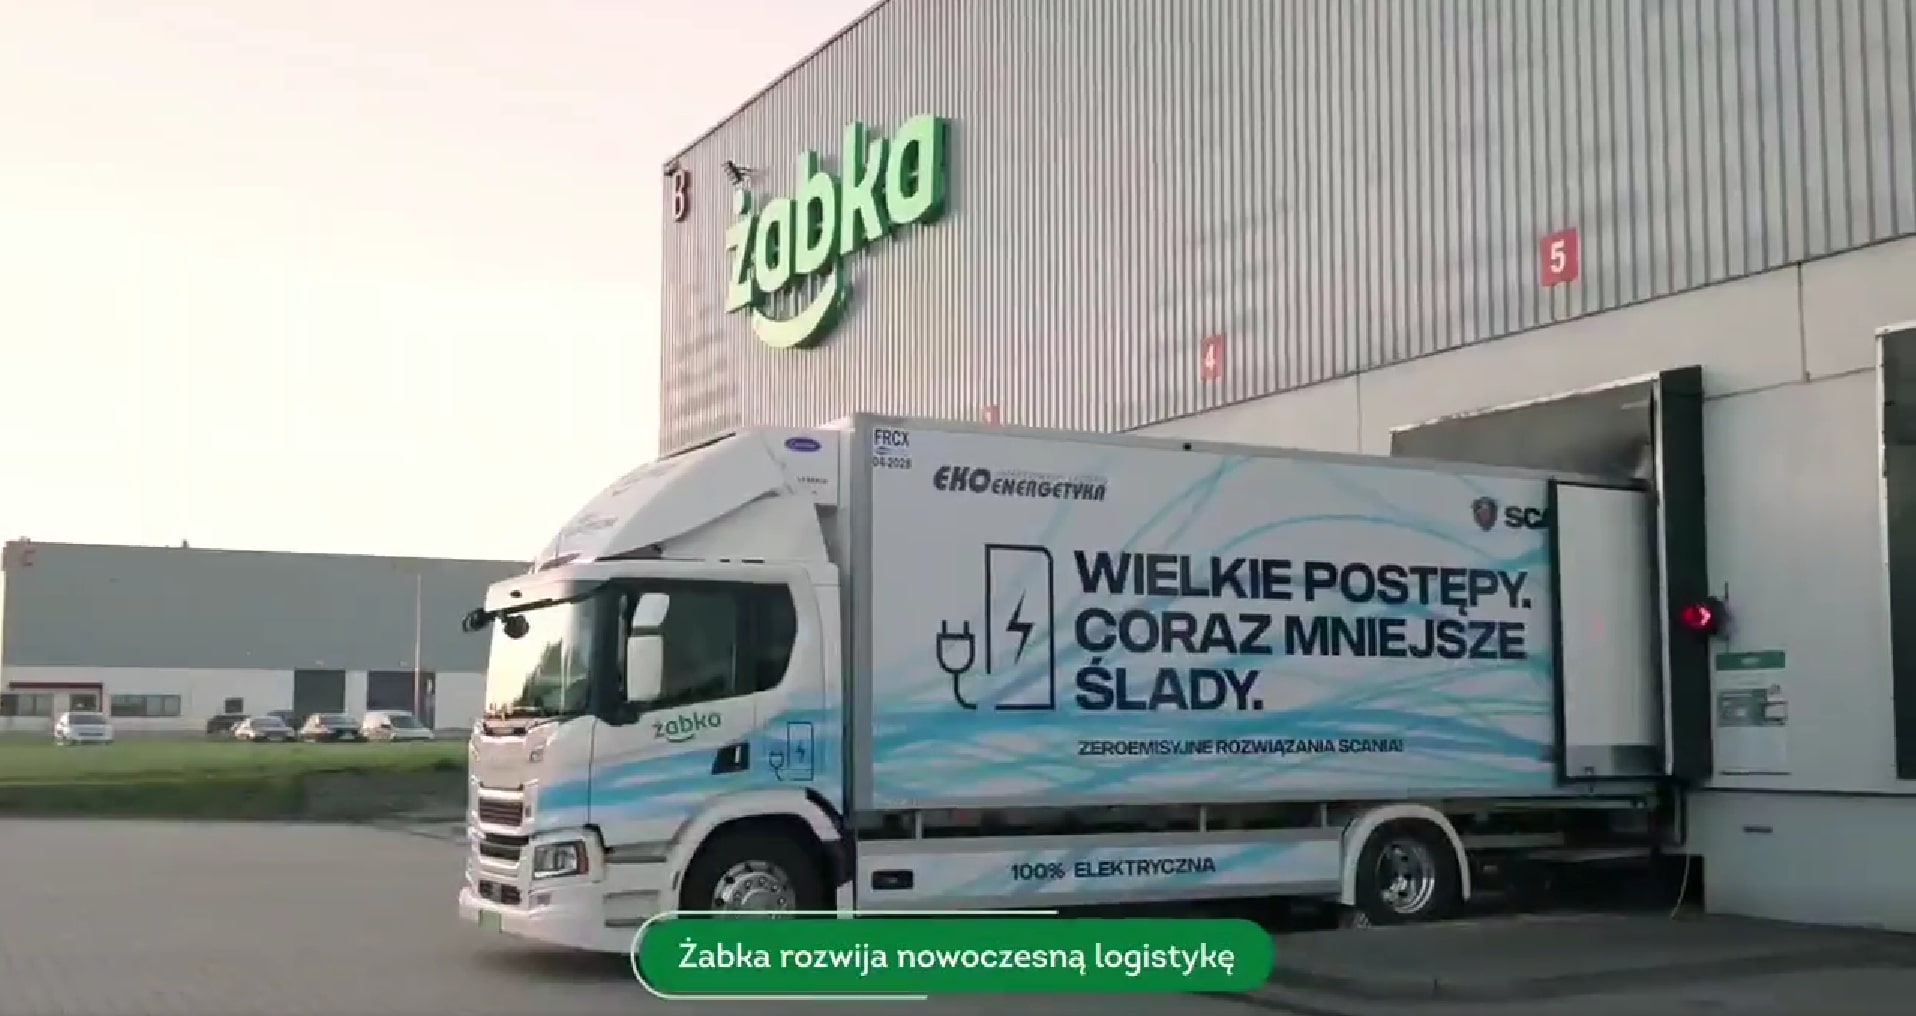 Żabka Polska testing fully electric distribution vehicle., Ekoenergetyka